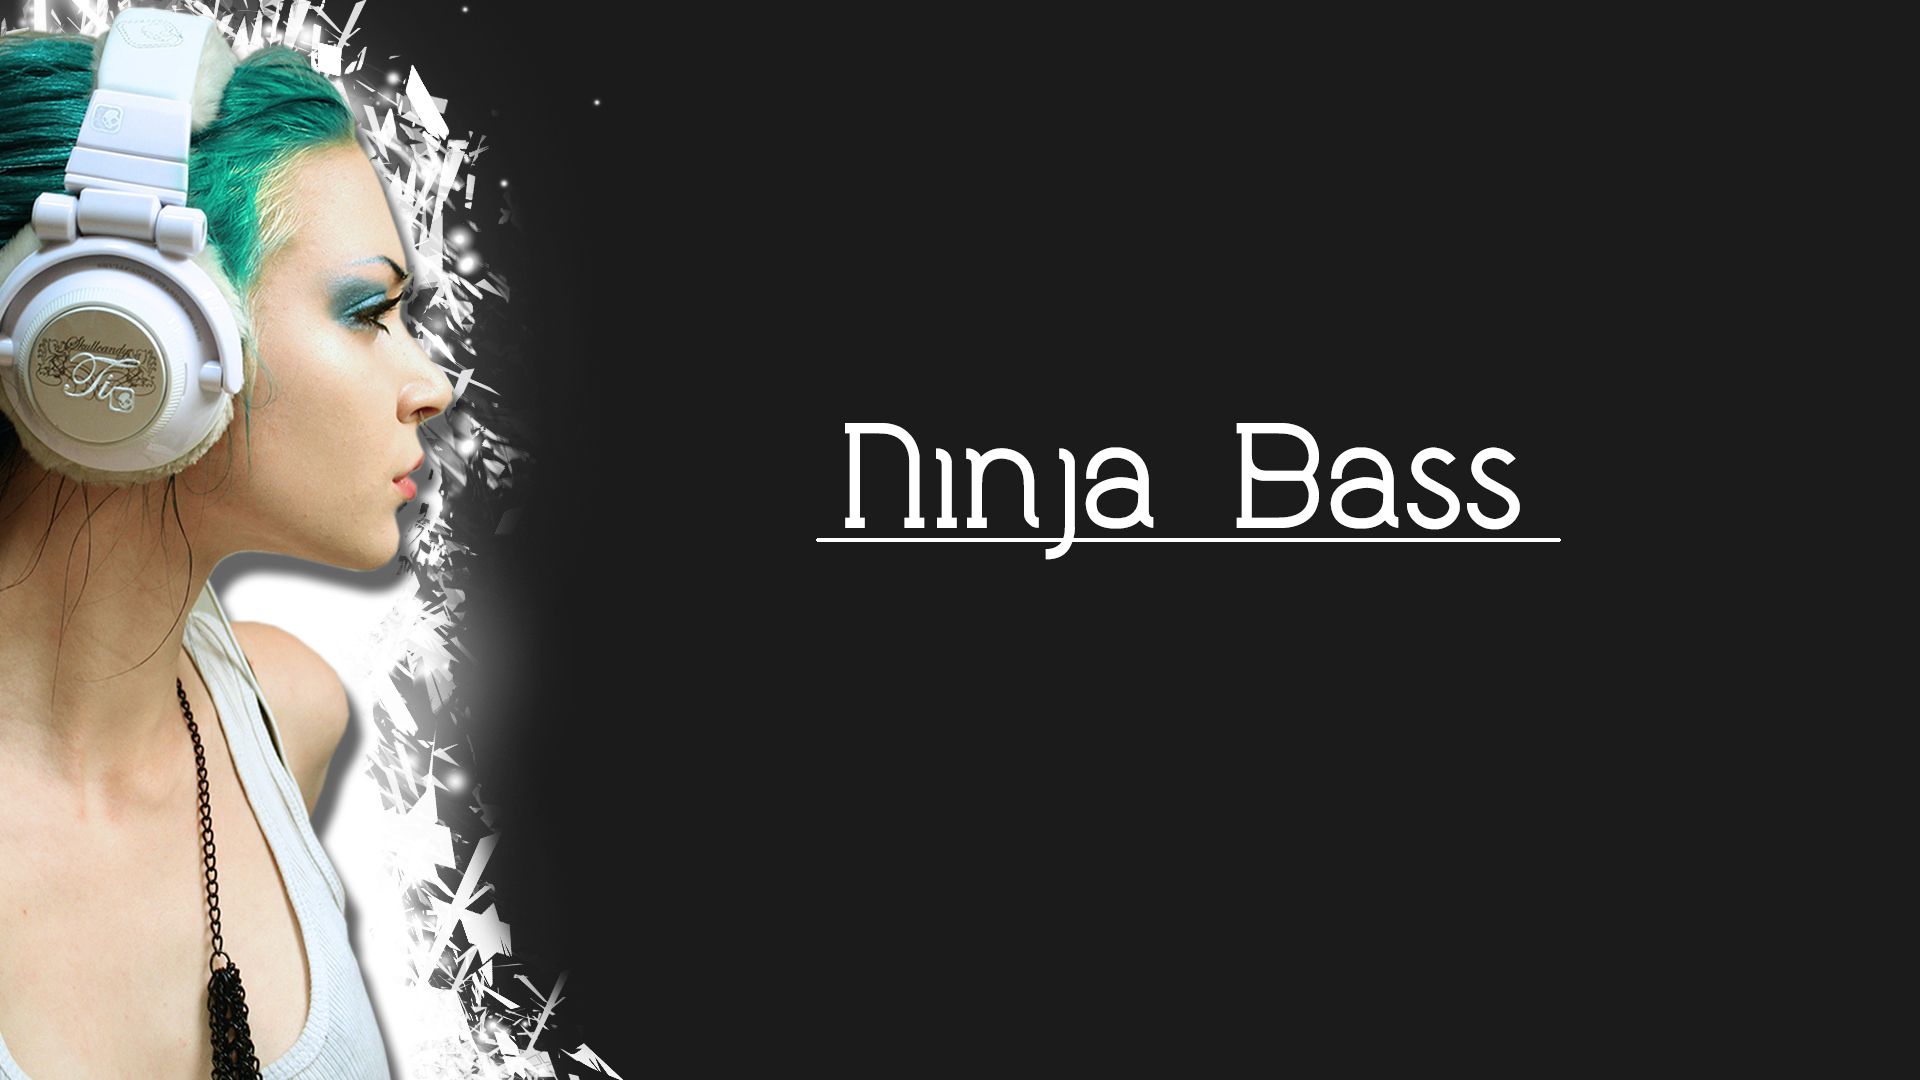 Ninja Bass Wallpapers